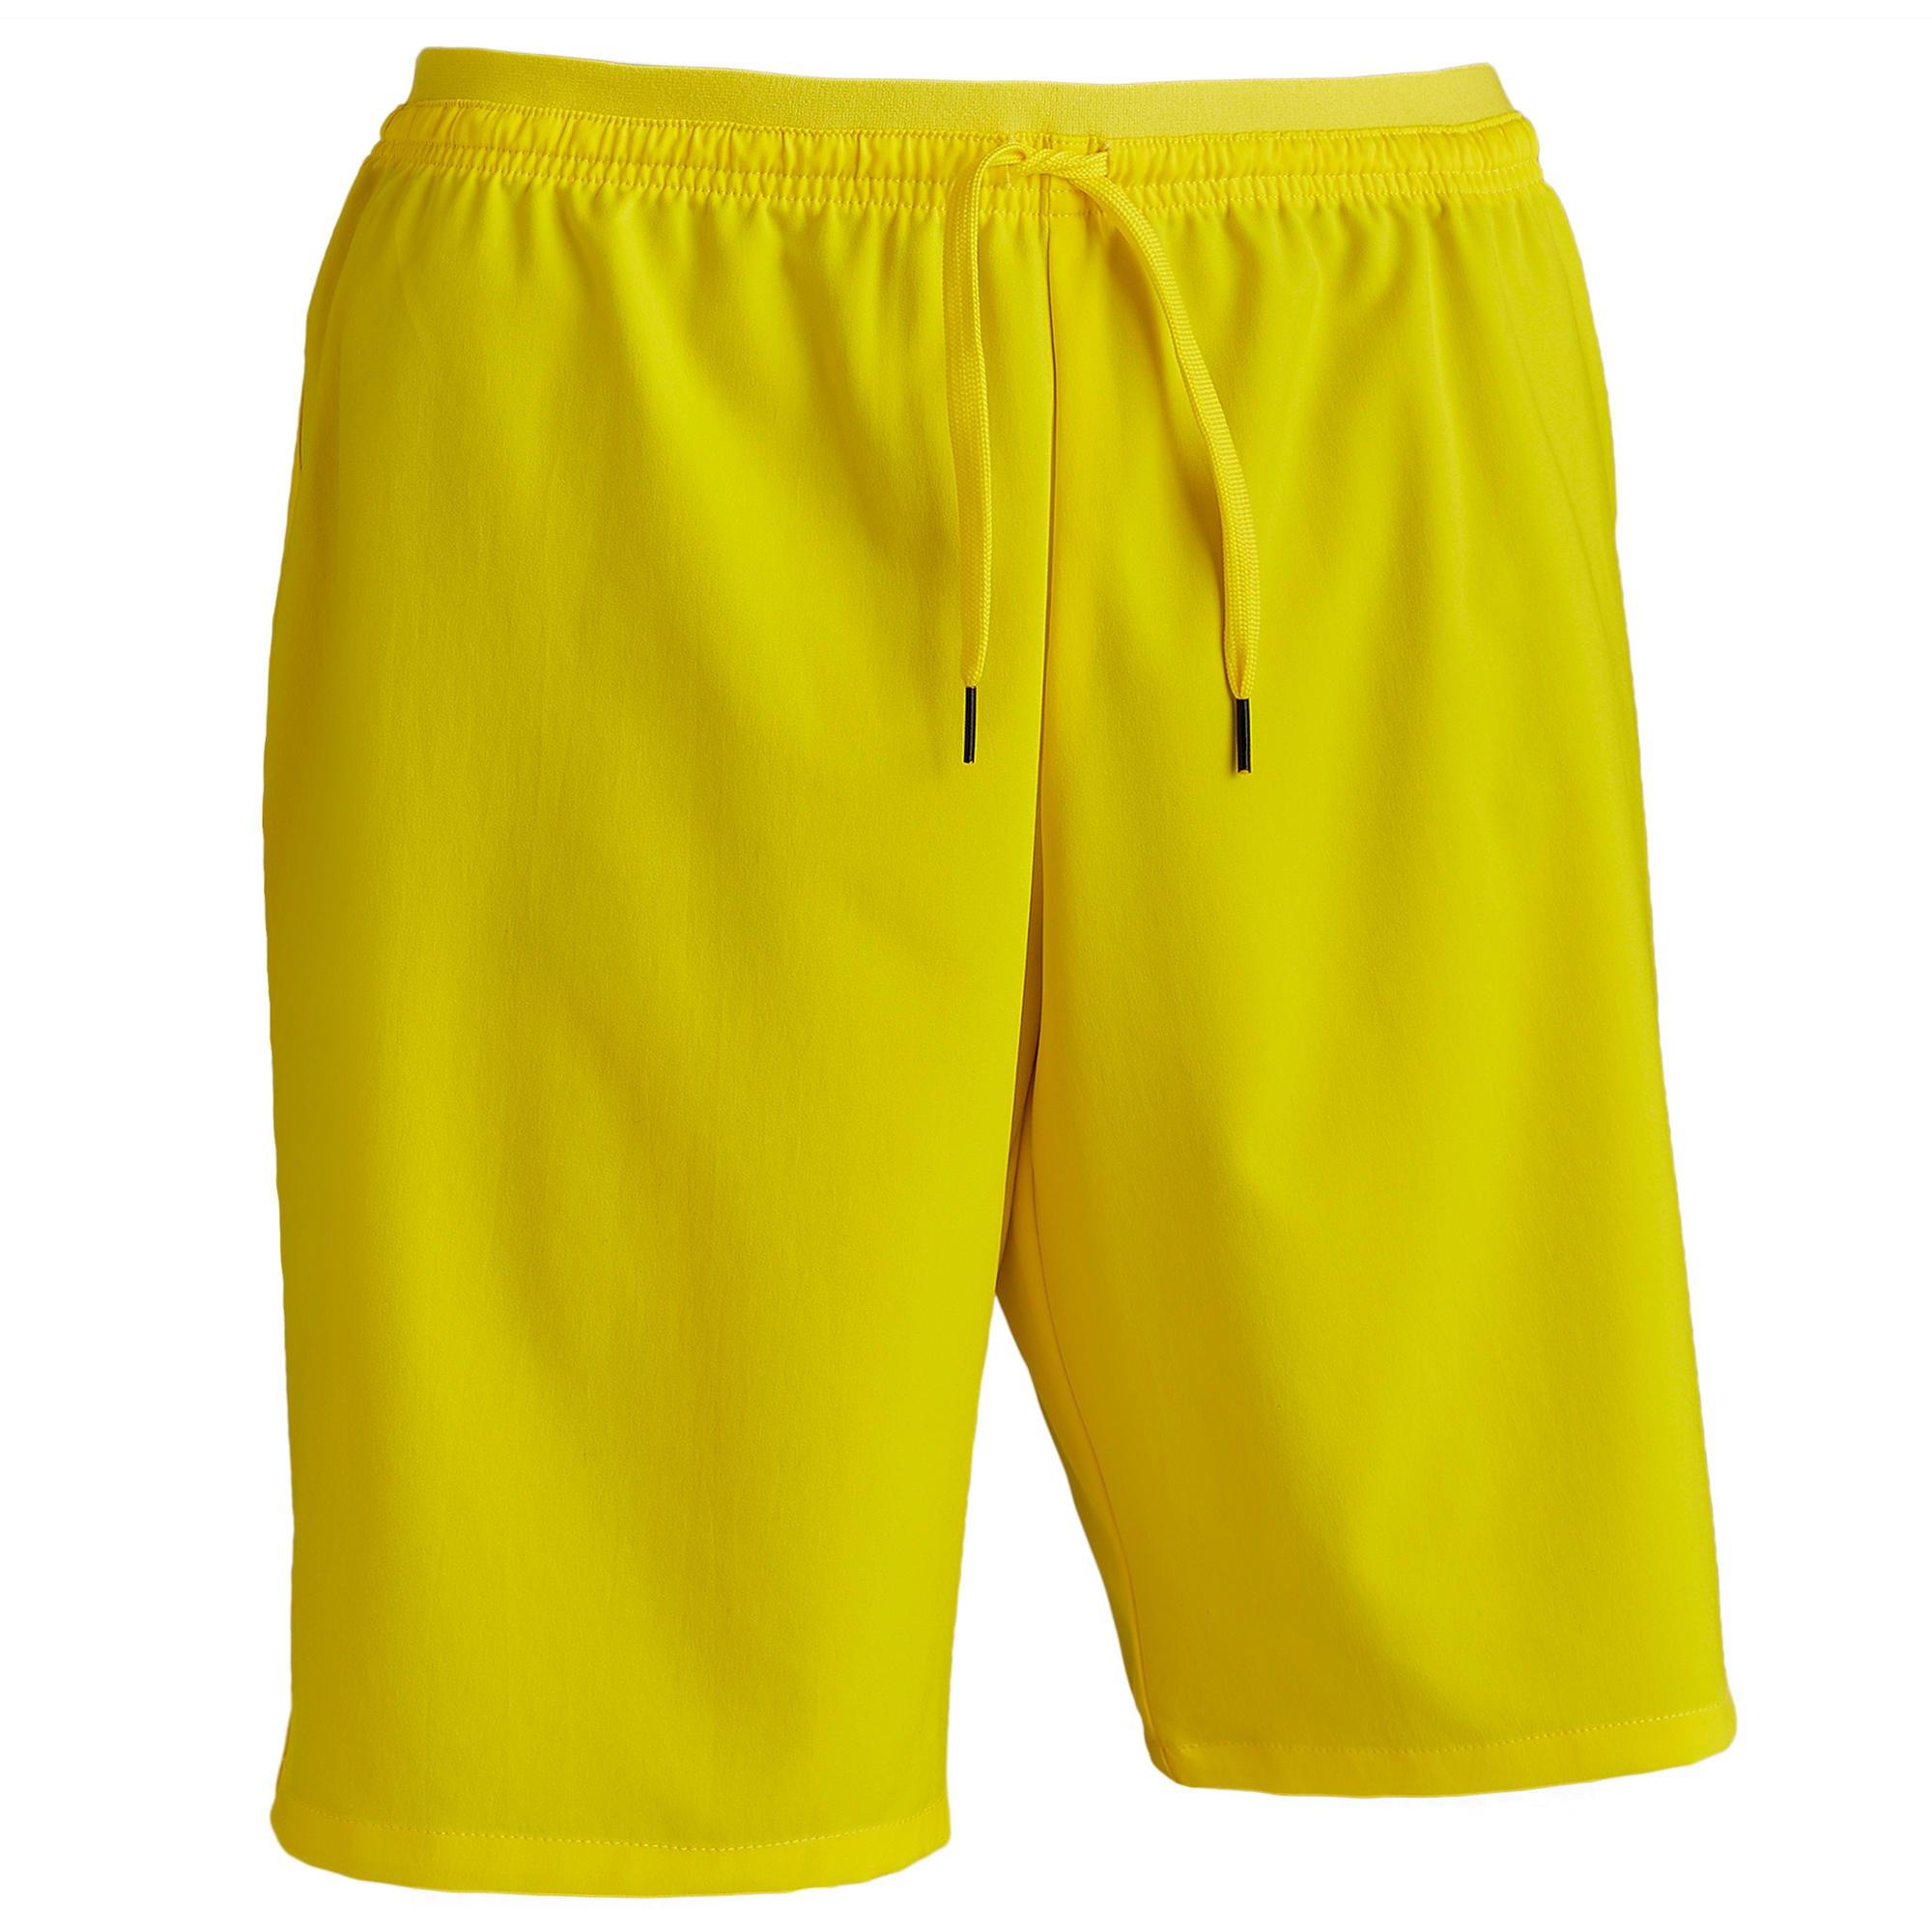 Футбольные шорты для взрослых Decathlon Viralto Club Kipsta, желтый футбольные шорты для взрослых decathlon viralto club kipsta темно синий